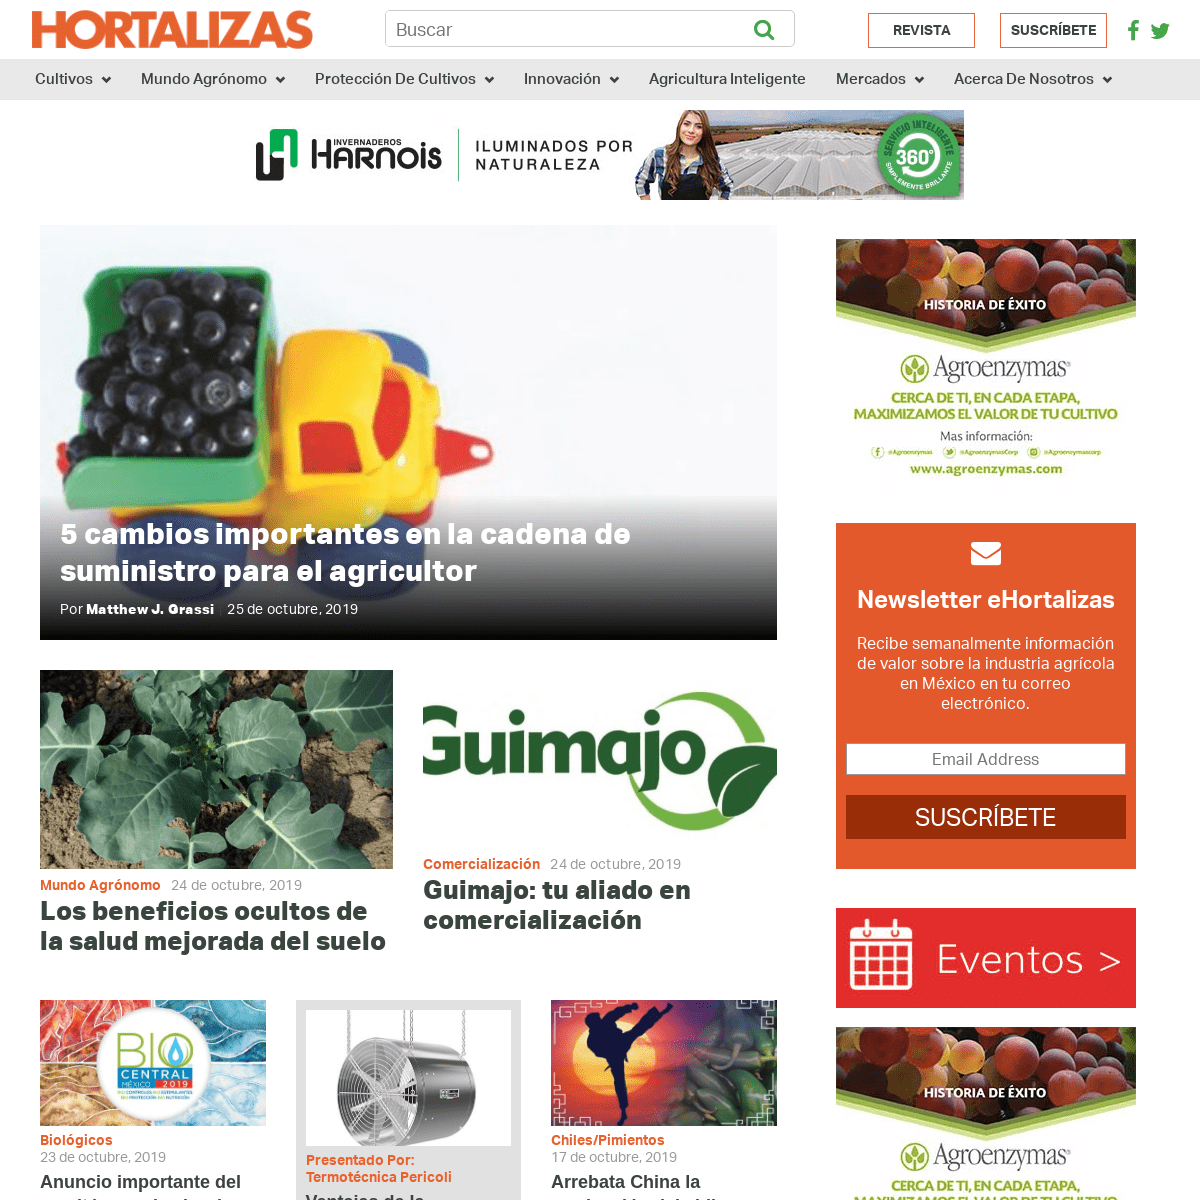 A complete backup of hortalizas.com